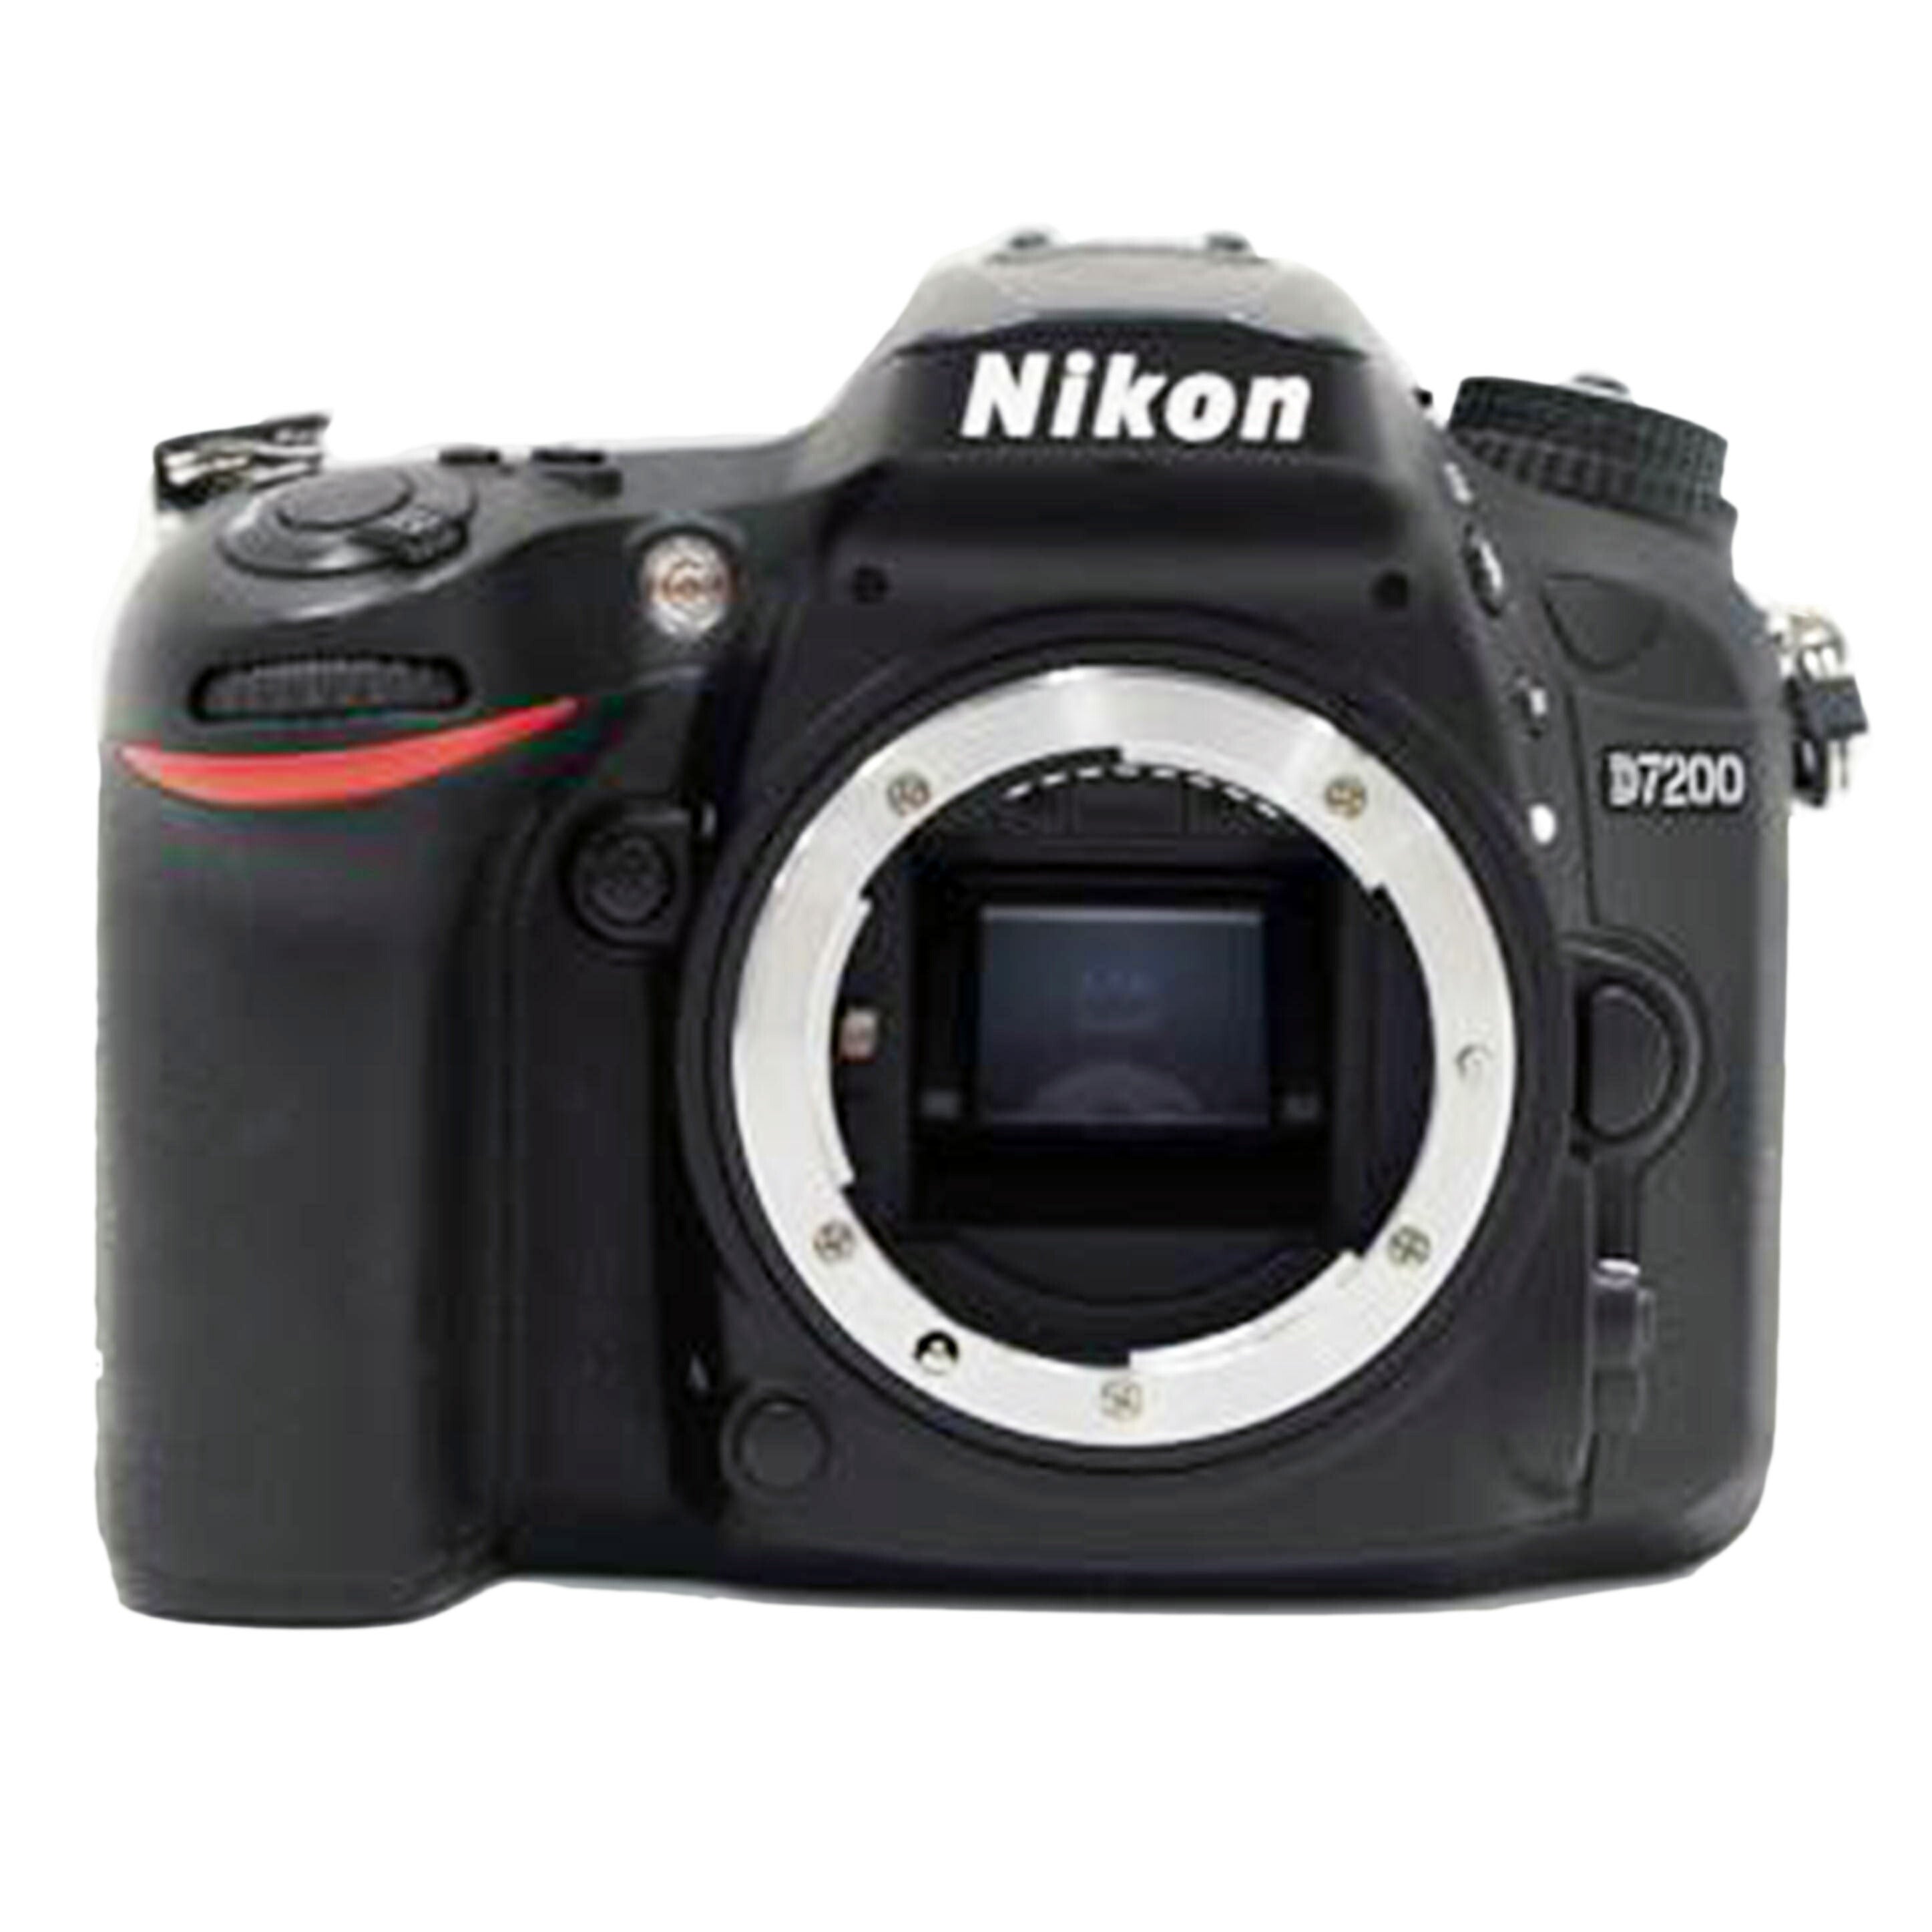 Nikon/デジタル一眼/D7200/MB-D15セット/2066407/Bランク/75【中古】